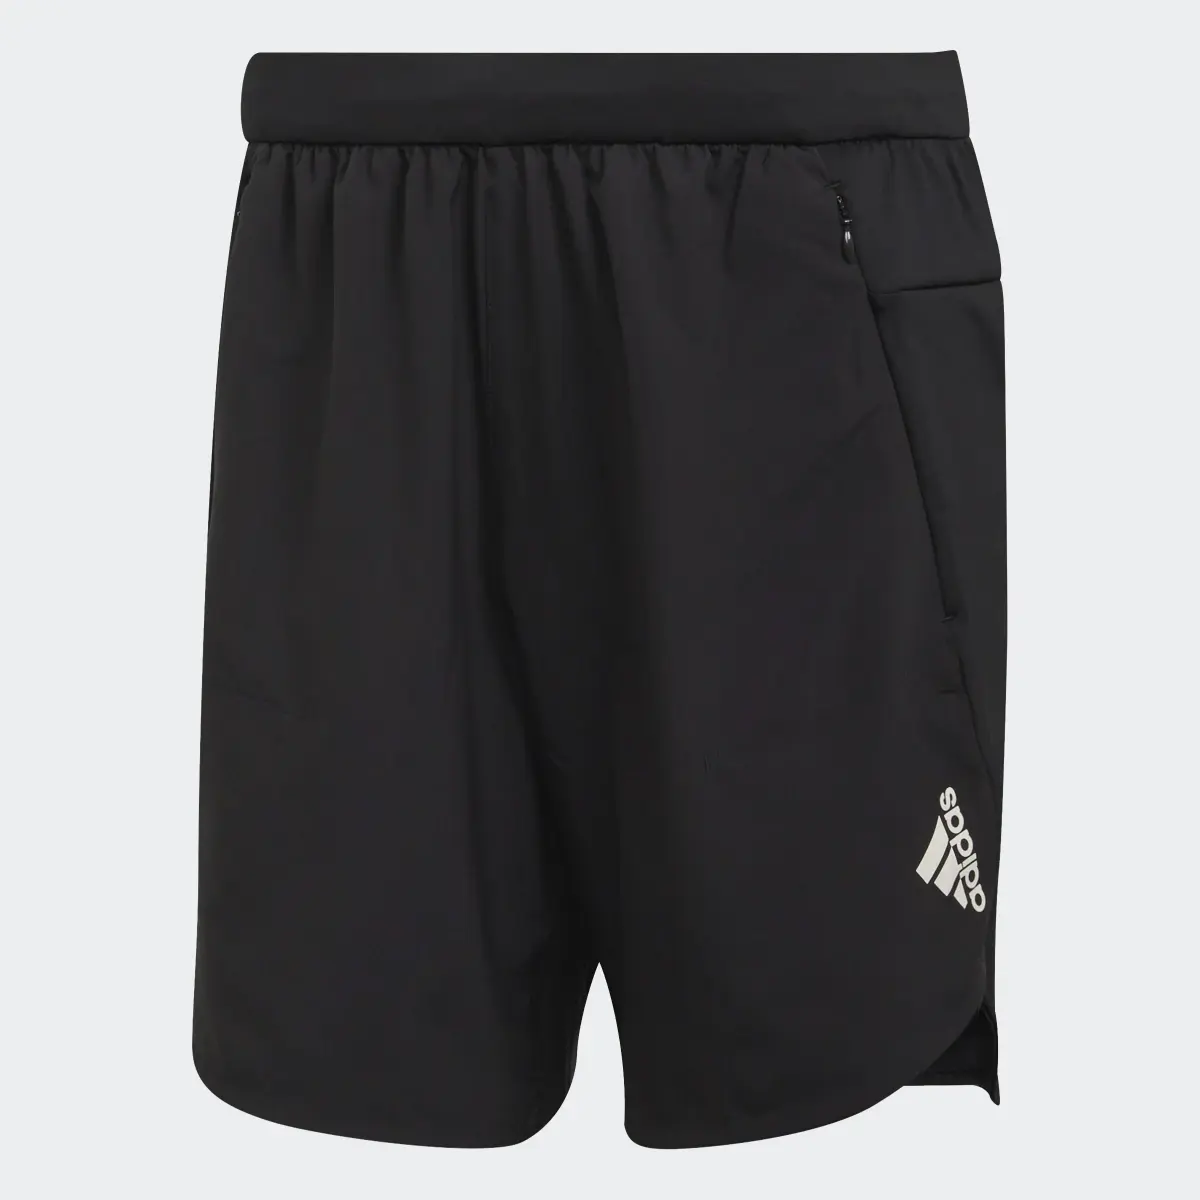 Adidas Shorts Designed for Training. 1